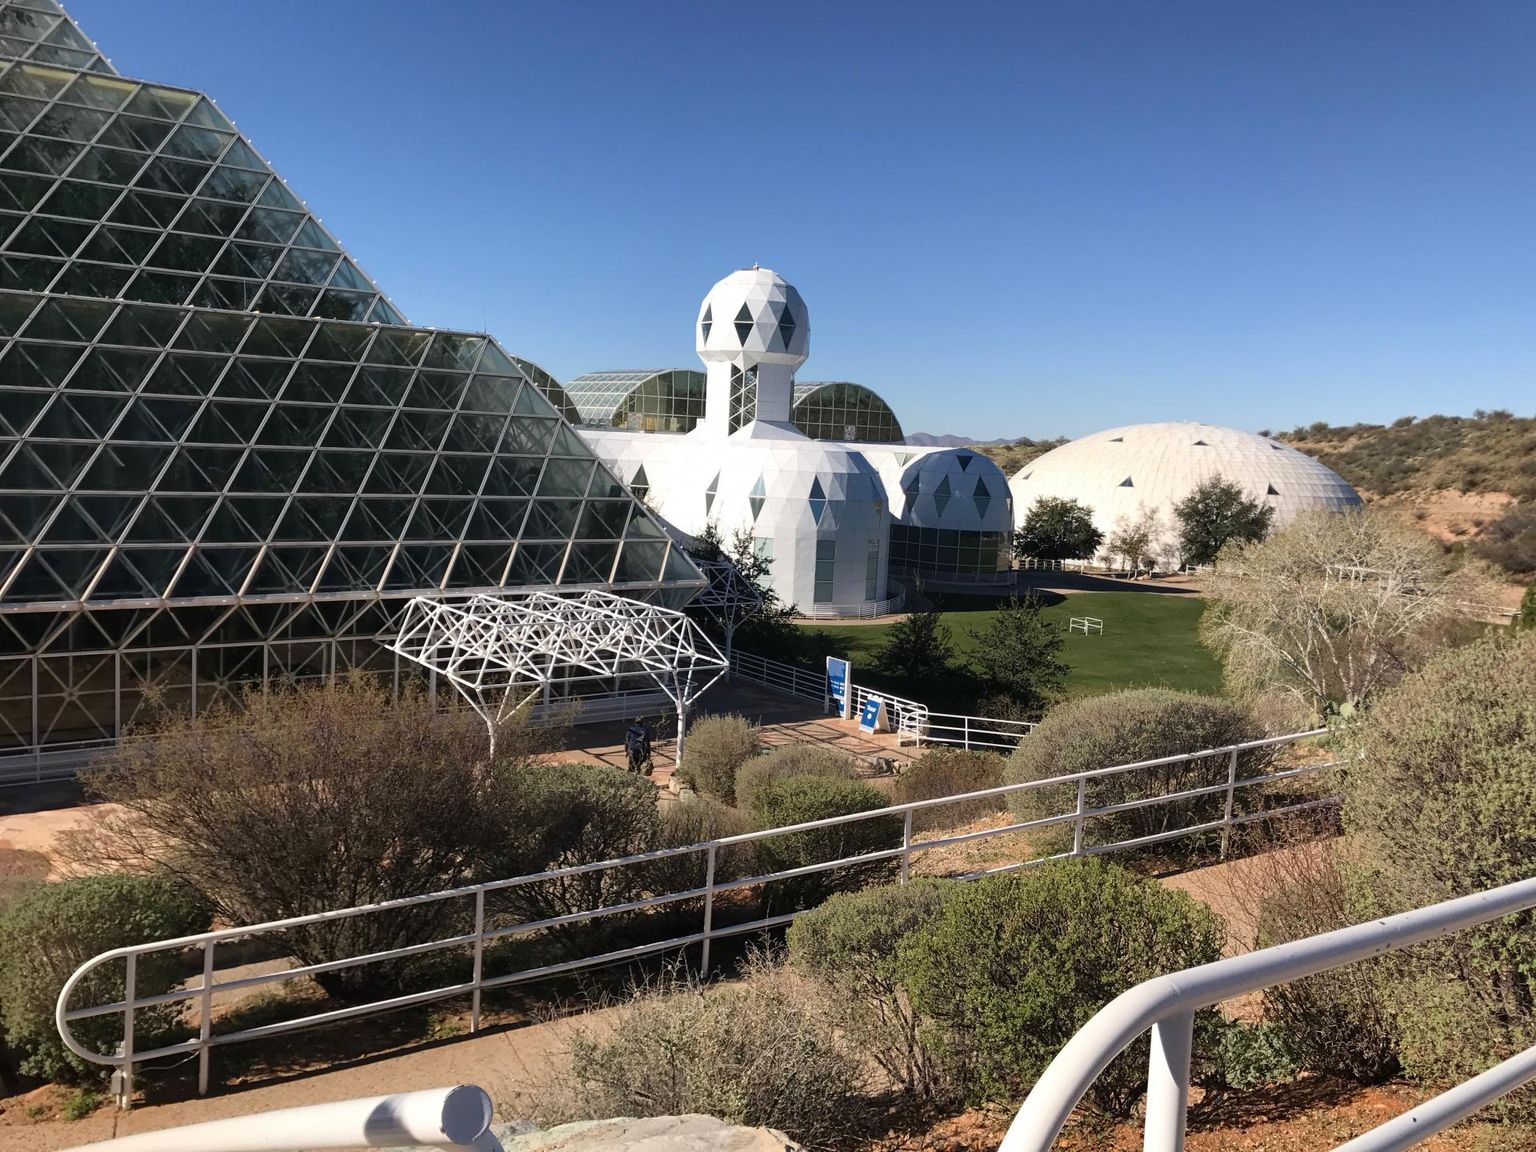 Projekti «Biosphere 2» hooned Arizona kõrbes. Katse luua väliskeskkonnast suletud miniatuurne biosfäär kukkus läbi, 1991. aastast õhukindlana hoitud hoonekompleks avati 2006. aastal, sest see oli muutund inimesele elukõlbmatuks. Teisisõnu: toimivat kosmosekolooniat ei õnnestunud tehislikult luua isegi koduplaneedil.